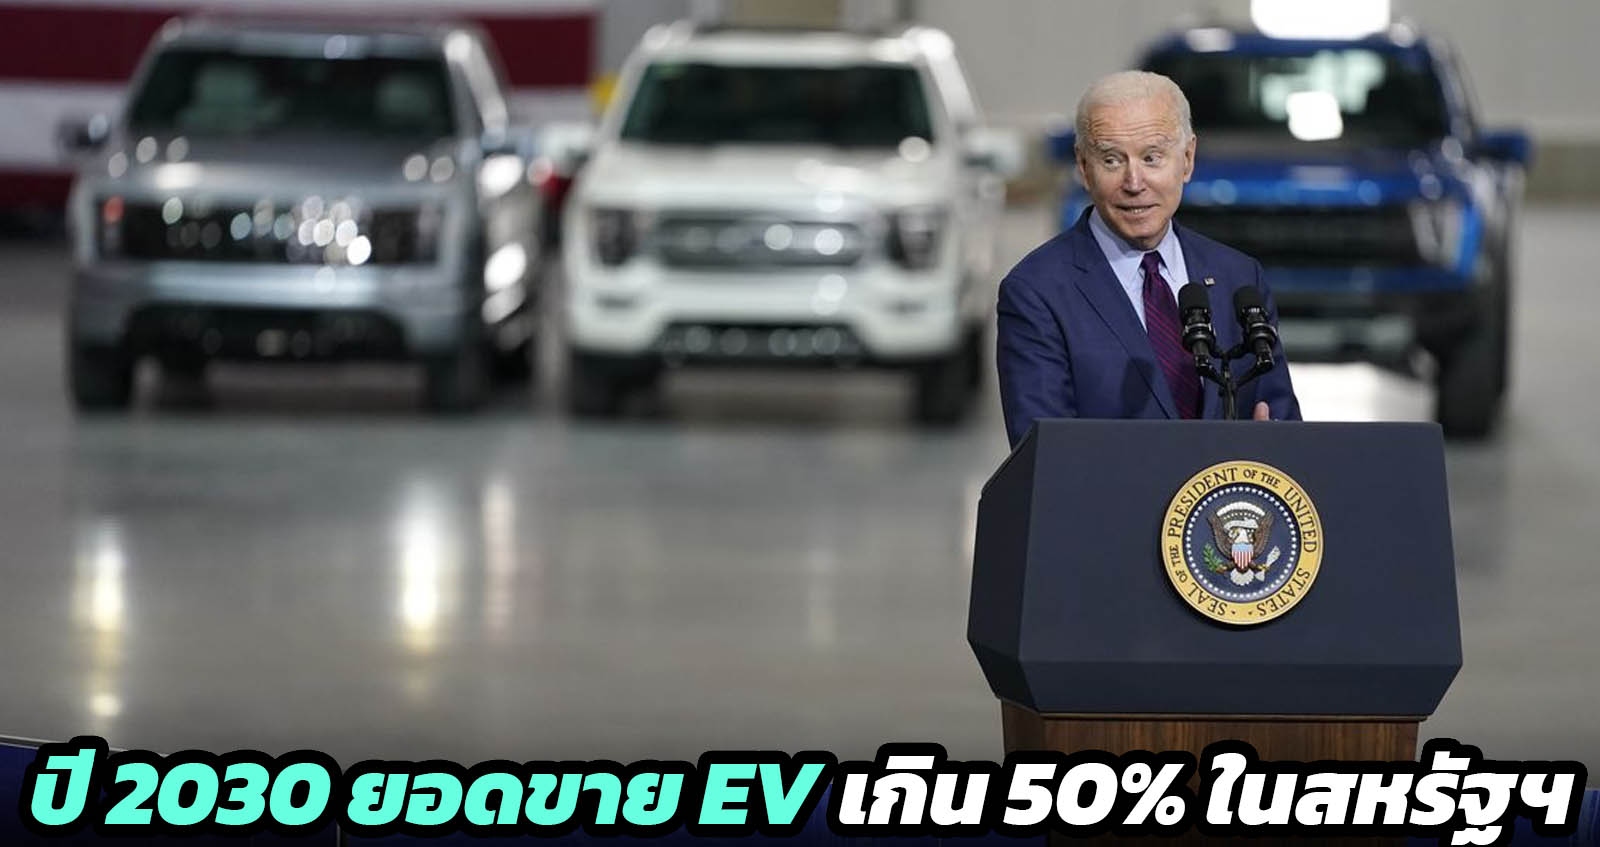 ประธานาธิบดีไบเดน ตั้งเป้า 50% ยอดขายรถยนต์ไฟฟ้า ในปี 2030